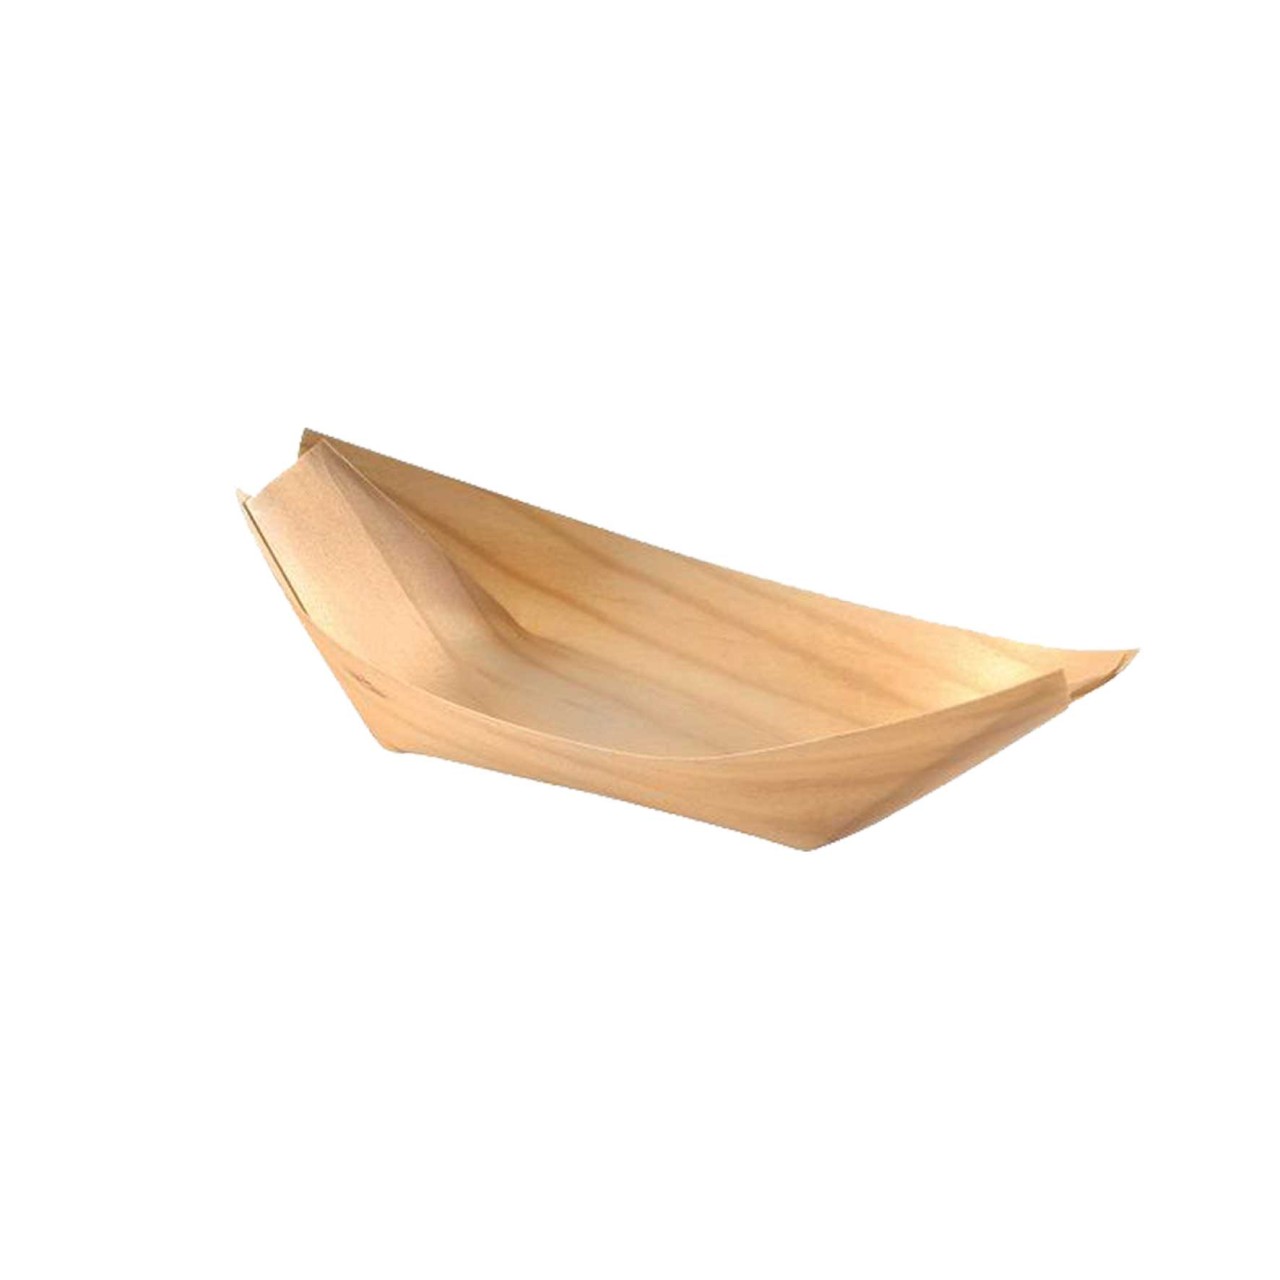 Holz-Schiffchen, klein, 13cm, 100 Stück/Packung